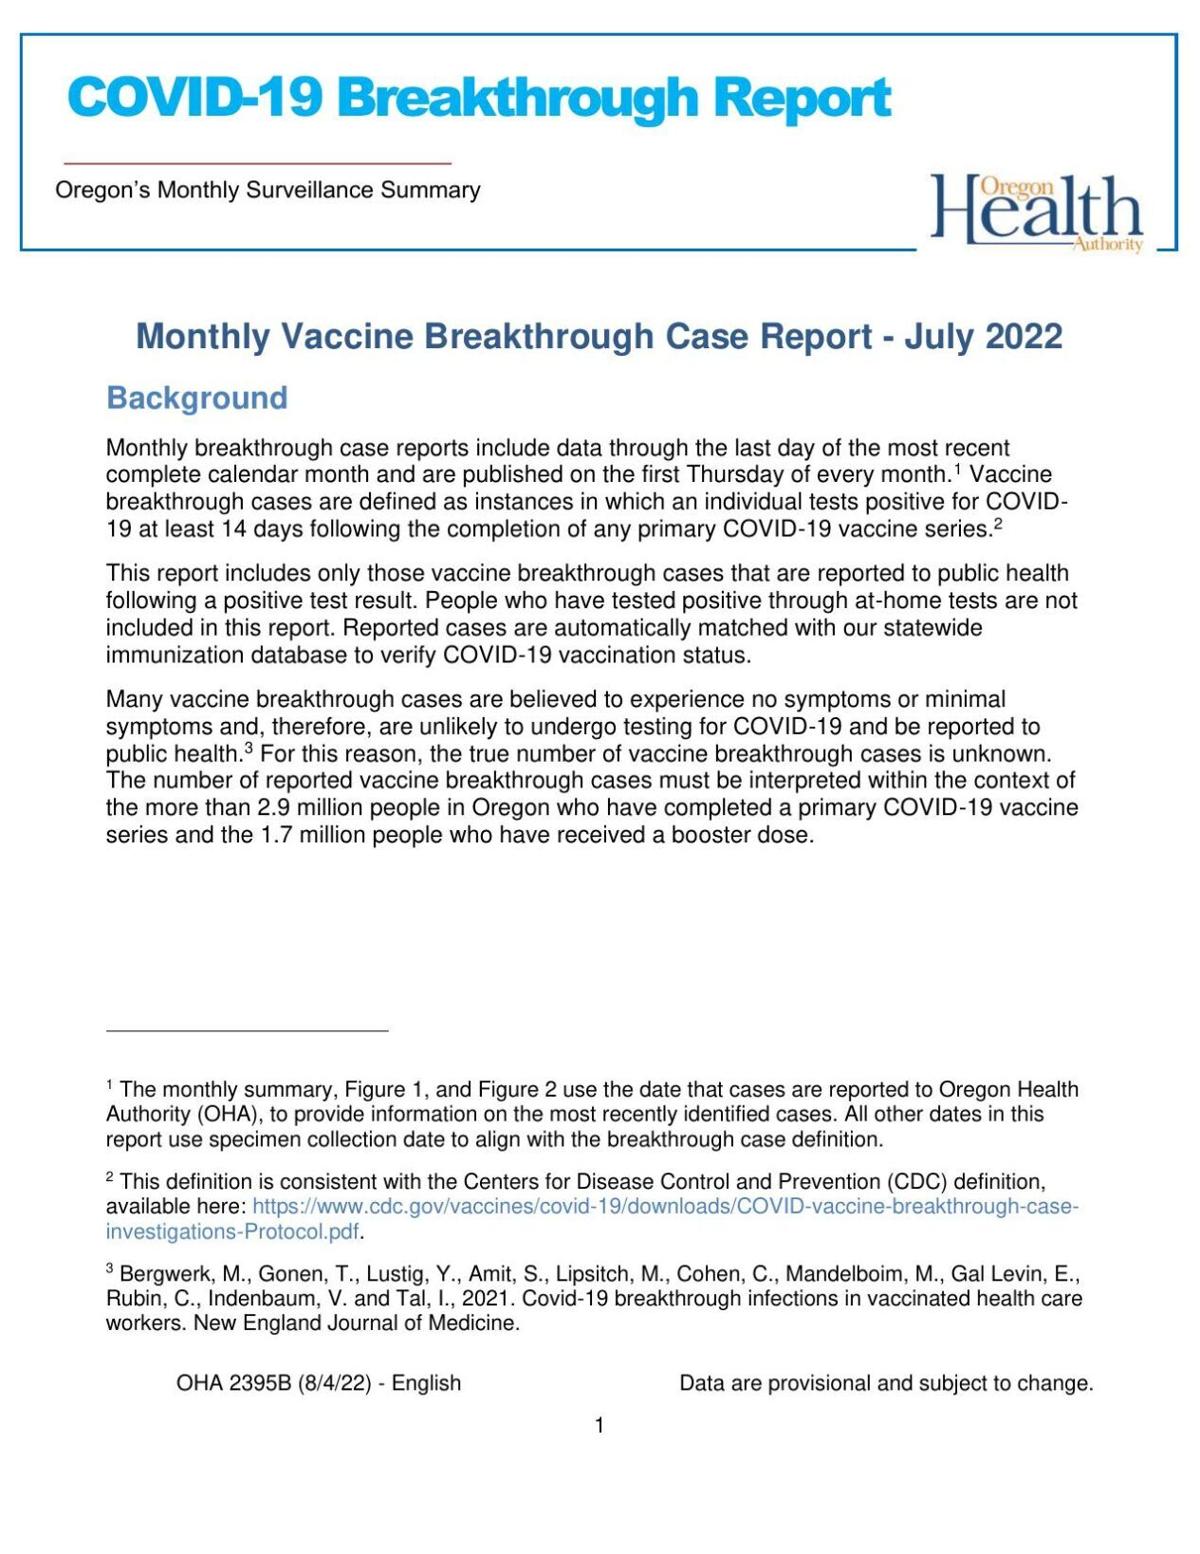 Breakthrough-Report-08-04-2022